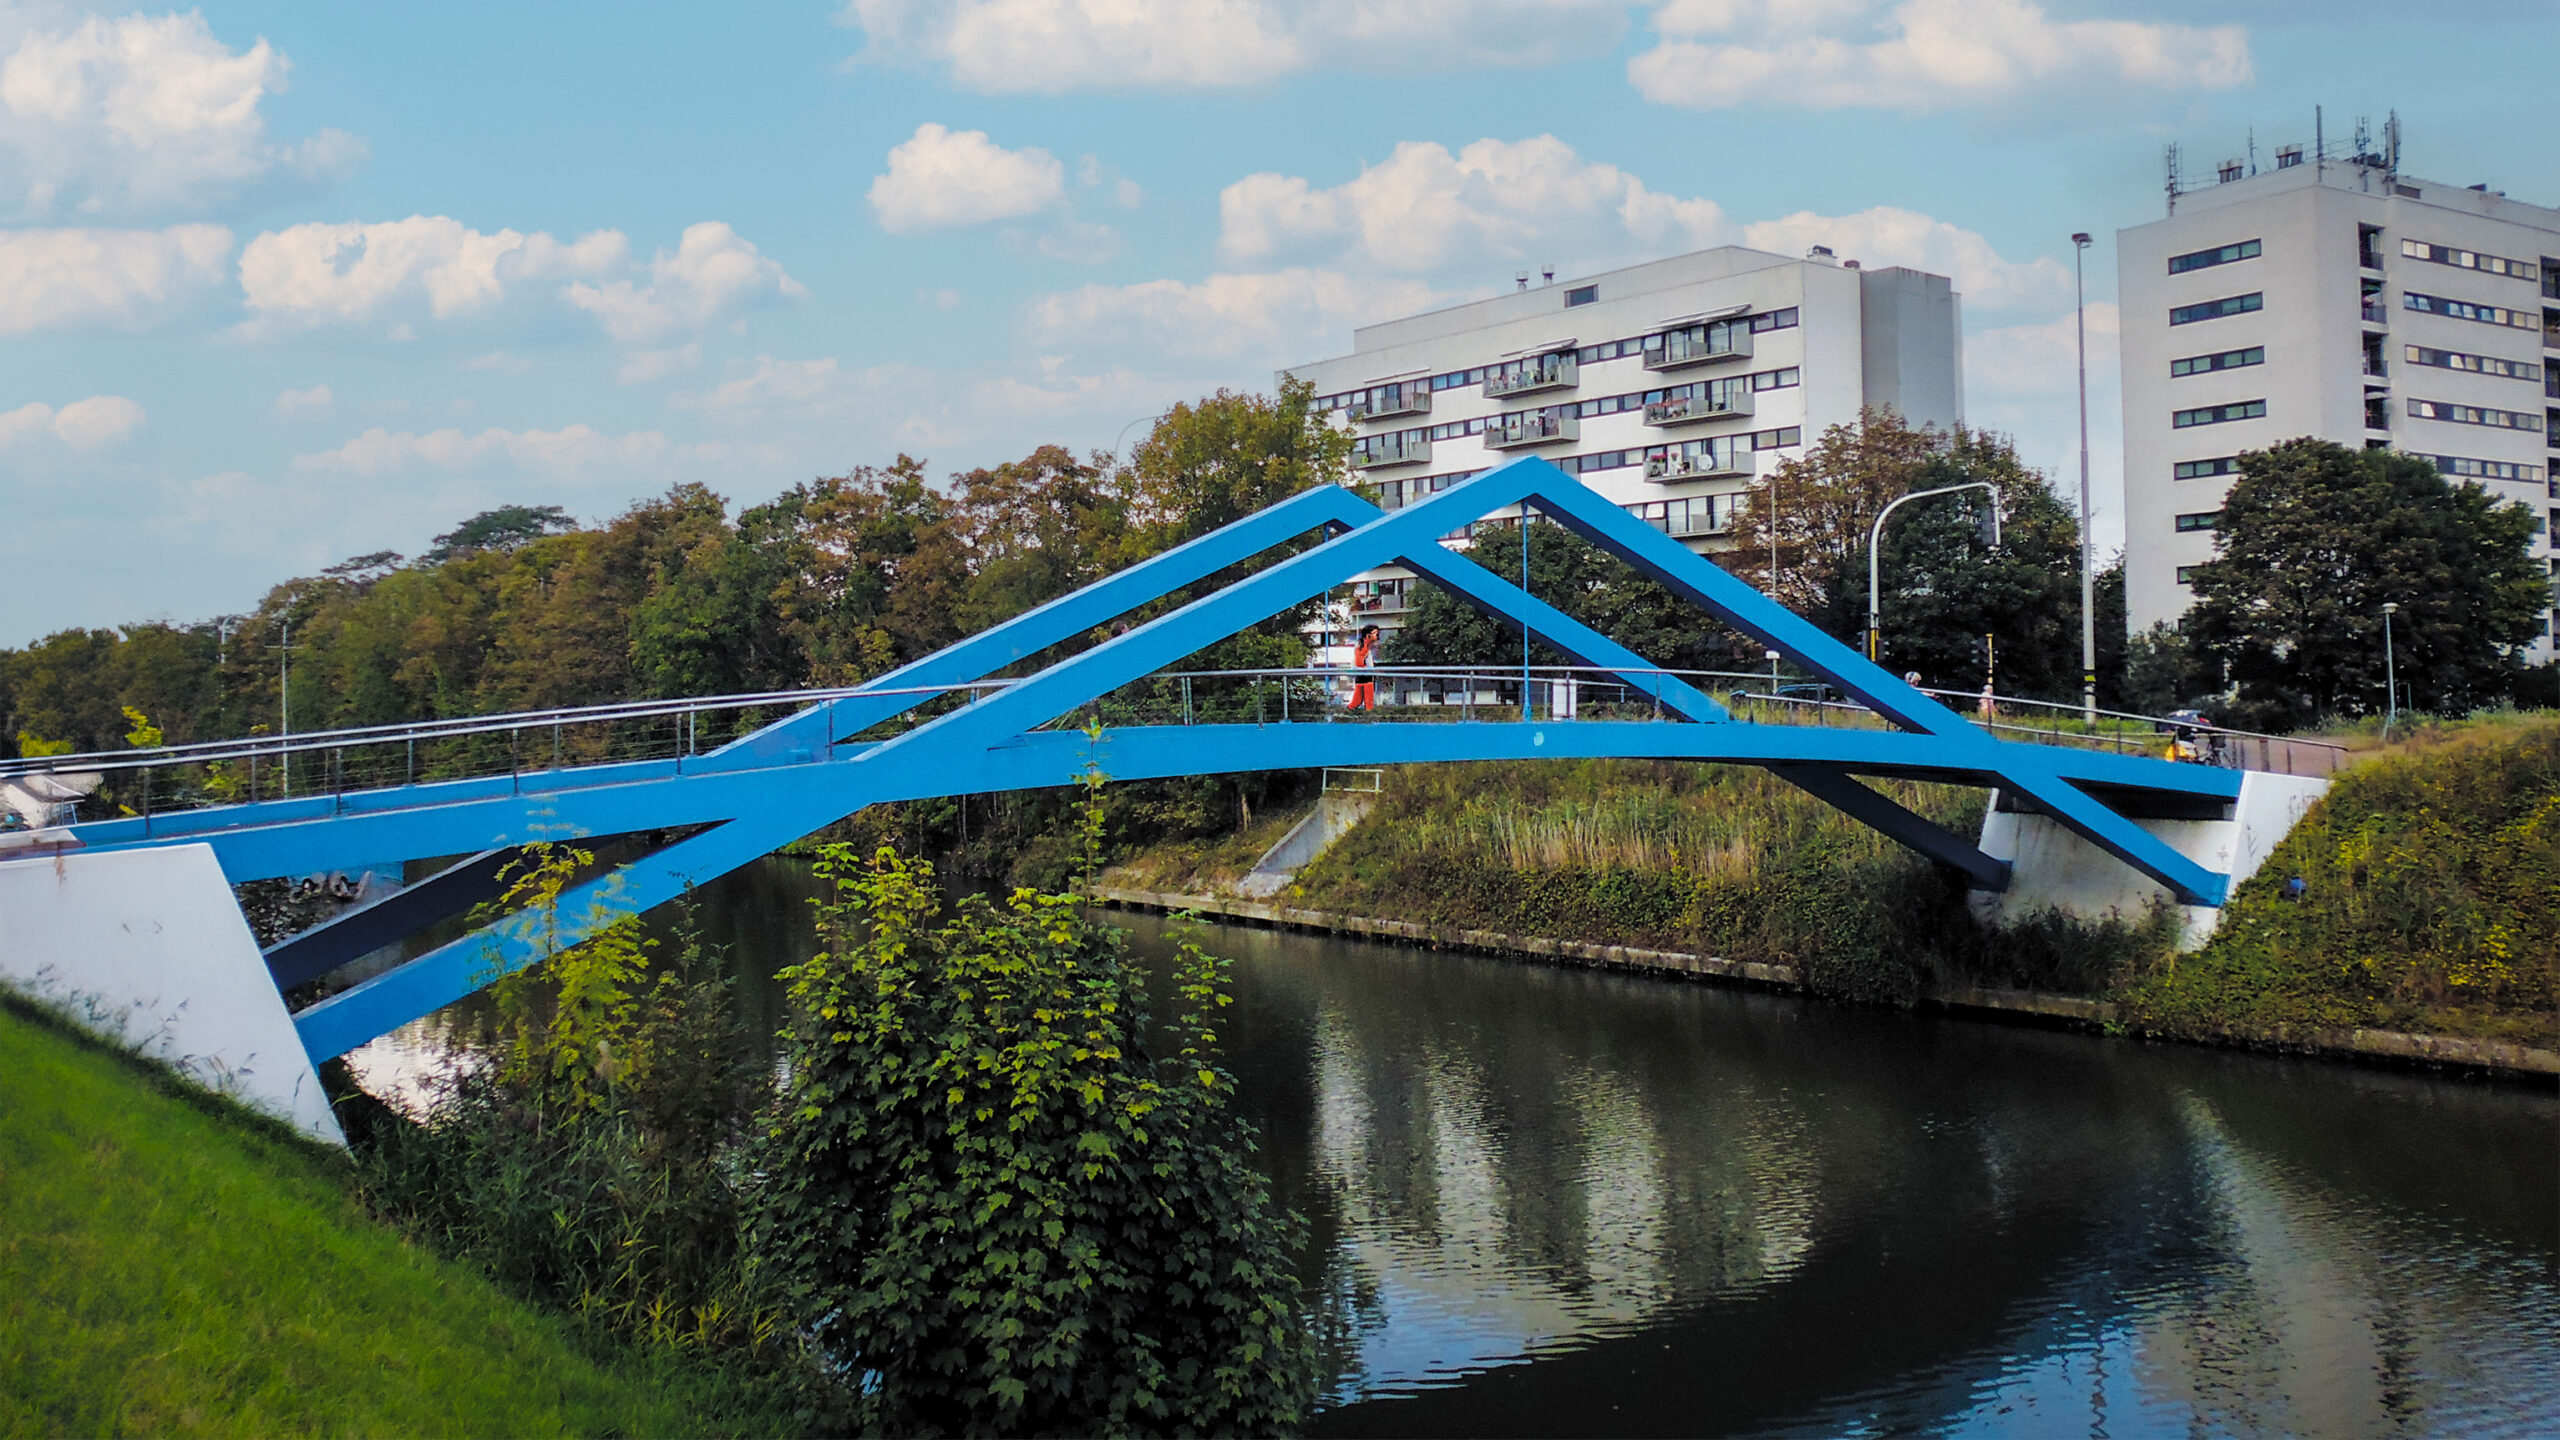 Blauwe brug